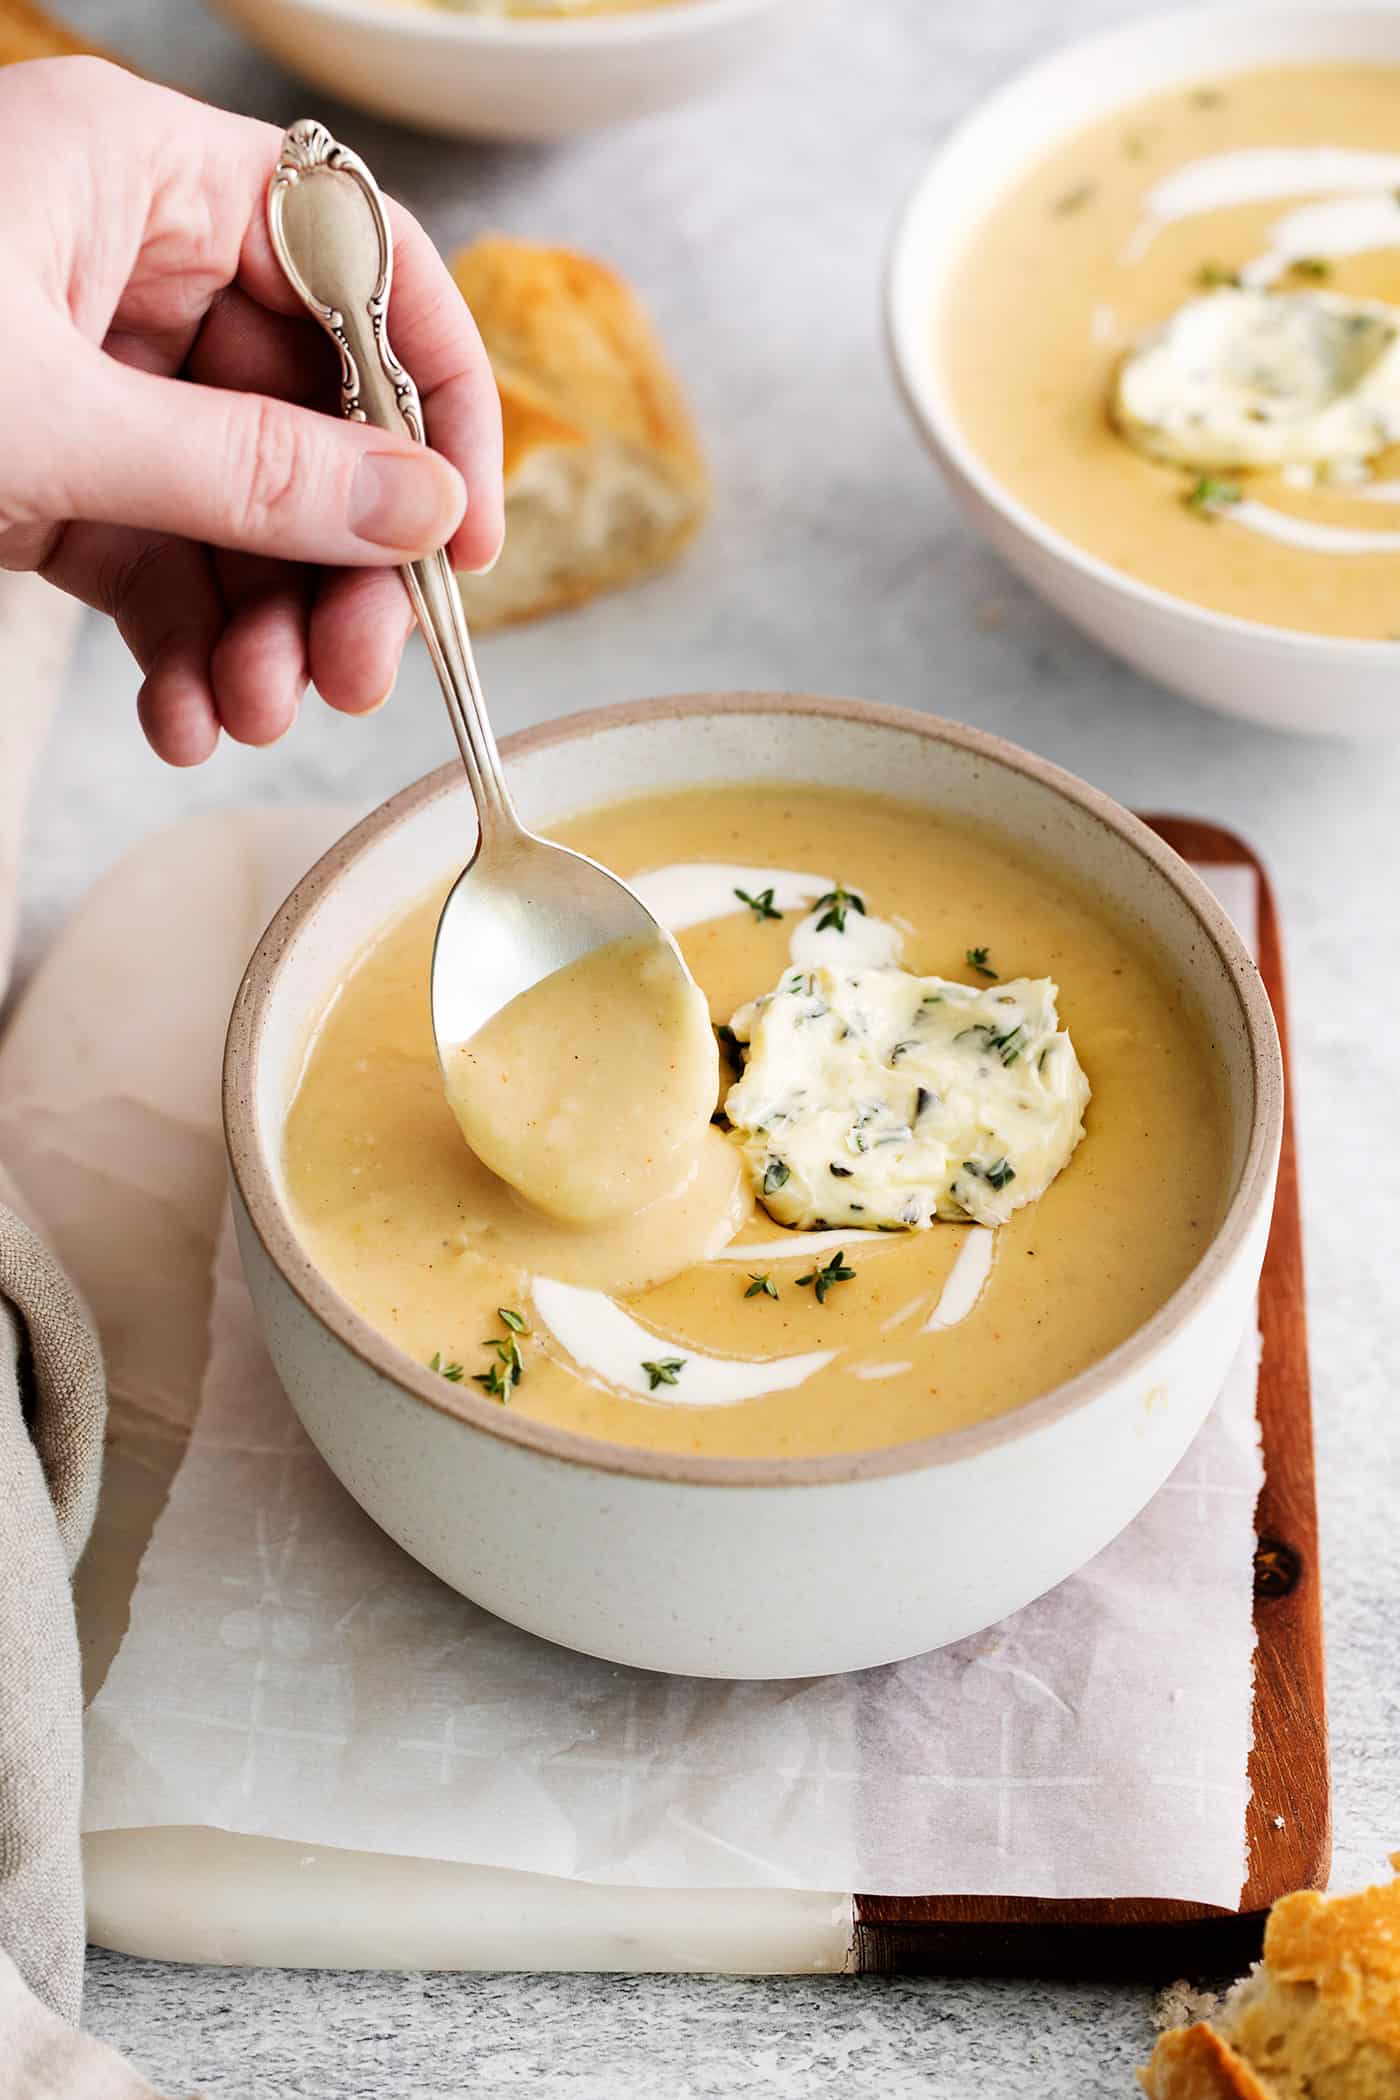 A spoon stirring a bowl of potato soup